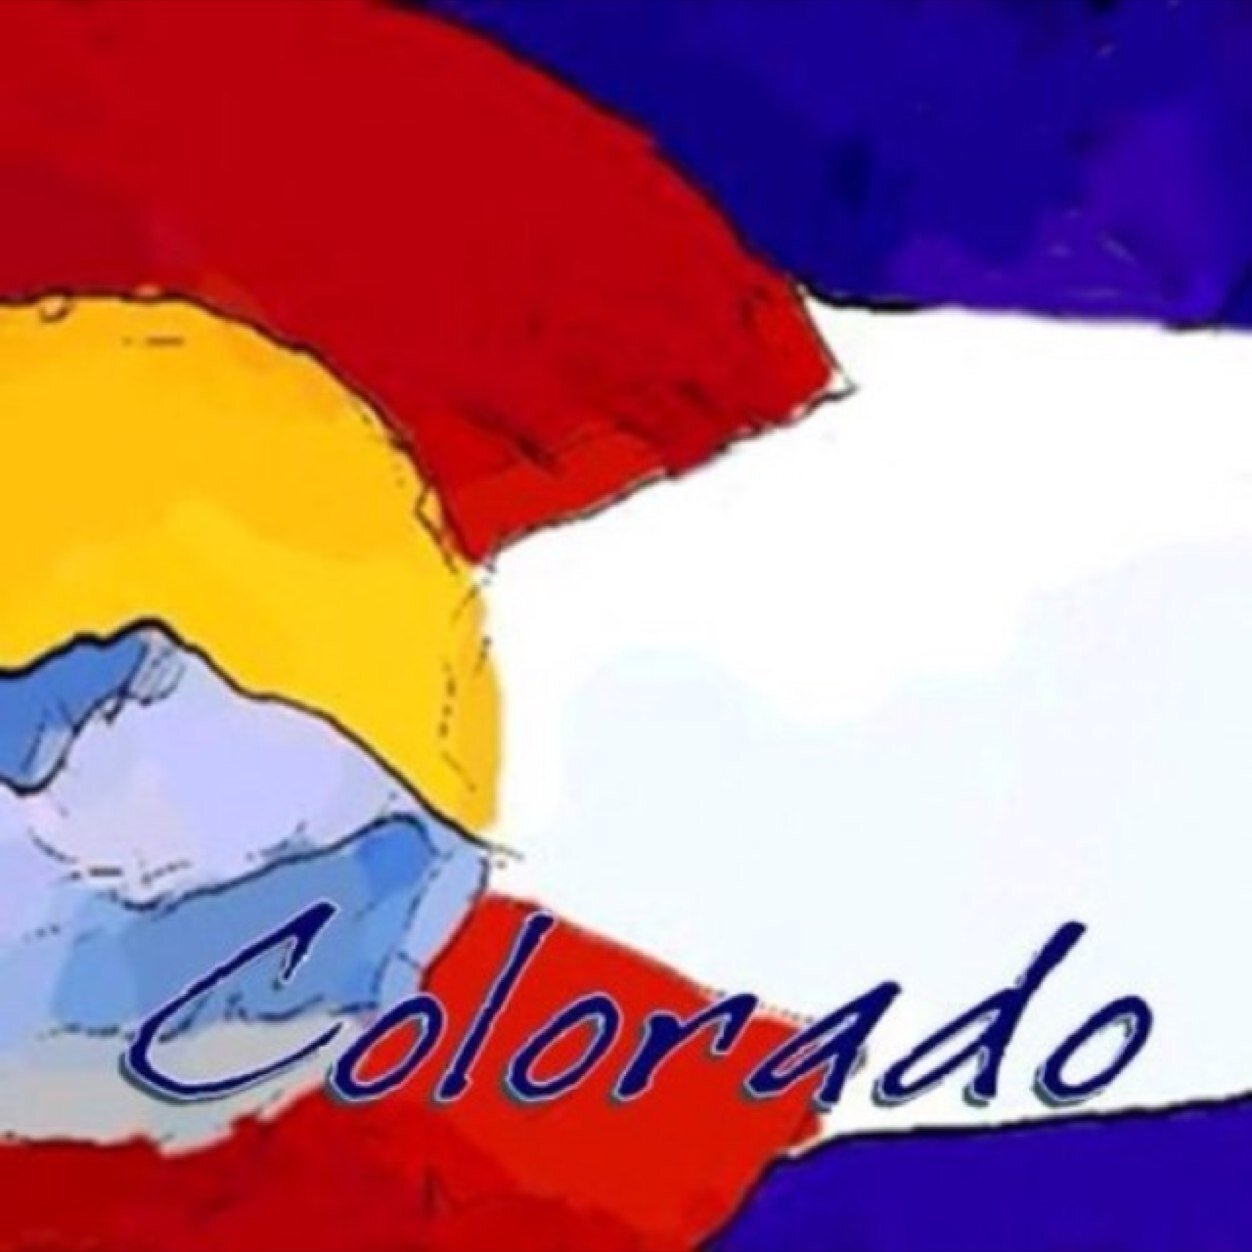 Un-Official Colorado Account. Tag #ColoradoIsBetterThanYou